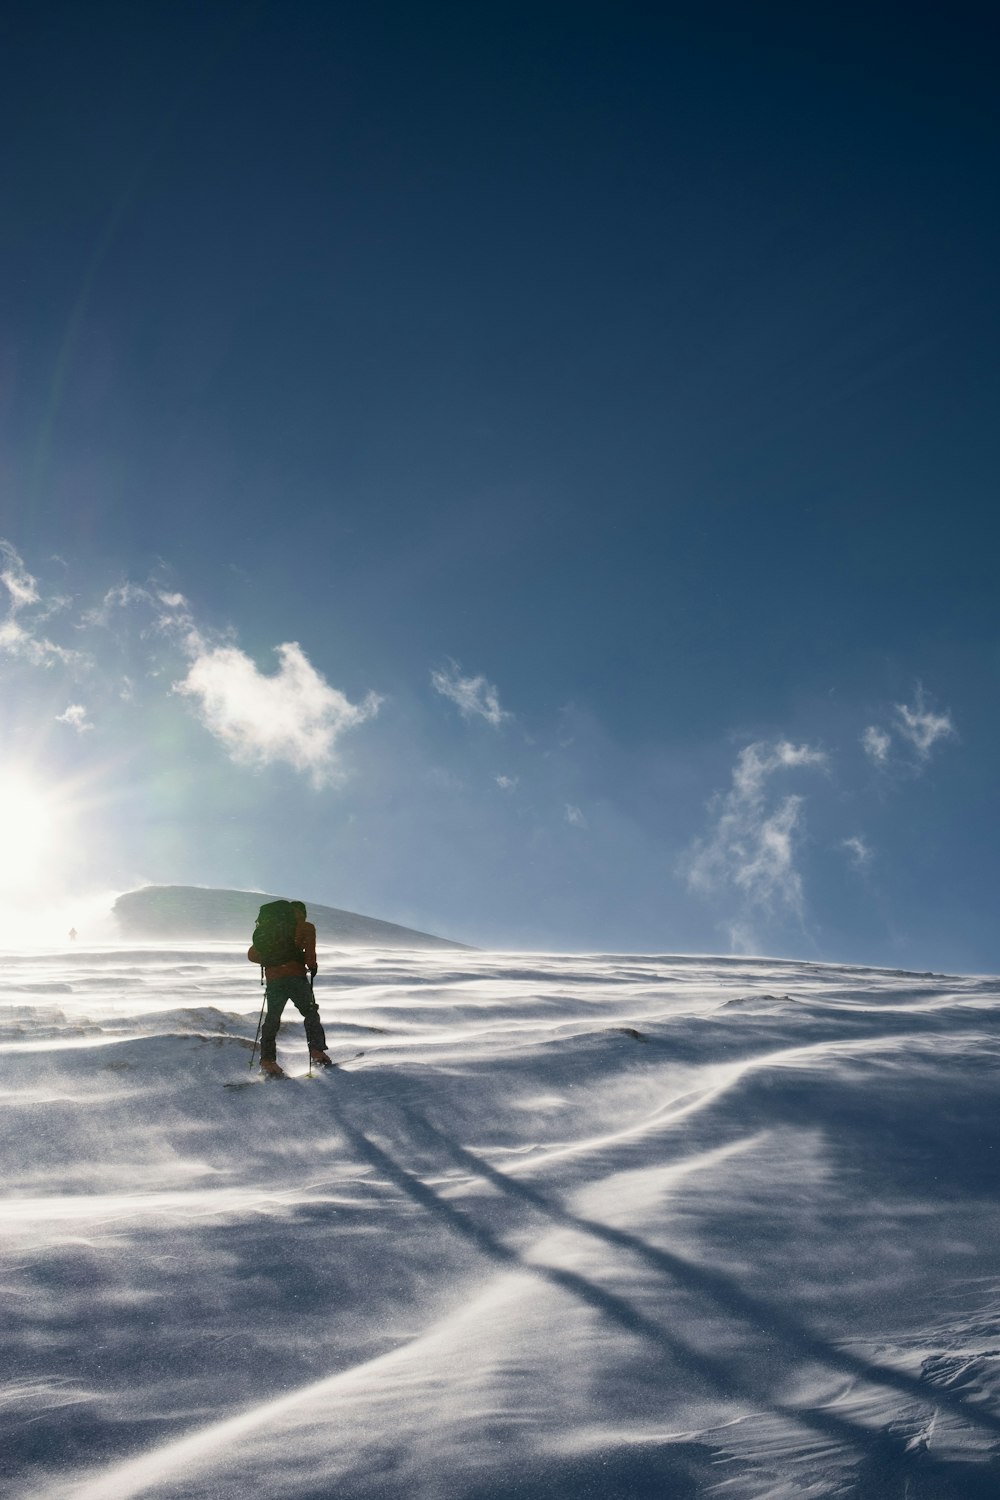 personne en veste verte marchant sur un sol enneigé sous un ciel nuageux ensoleillé bleu et blanc